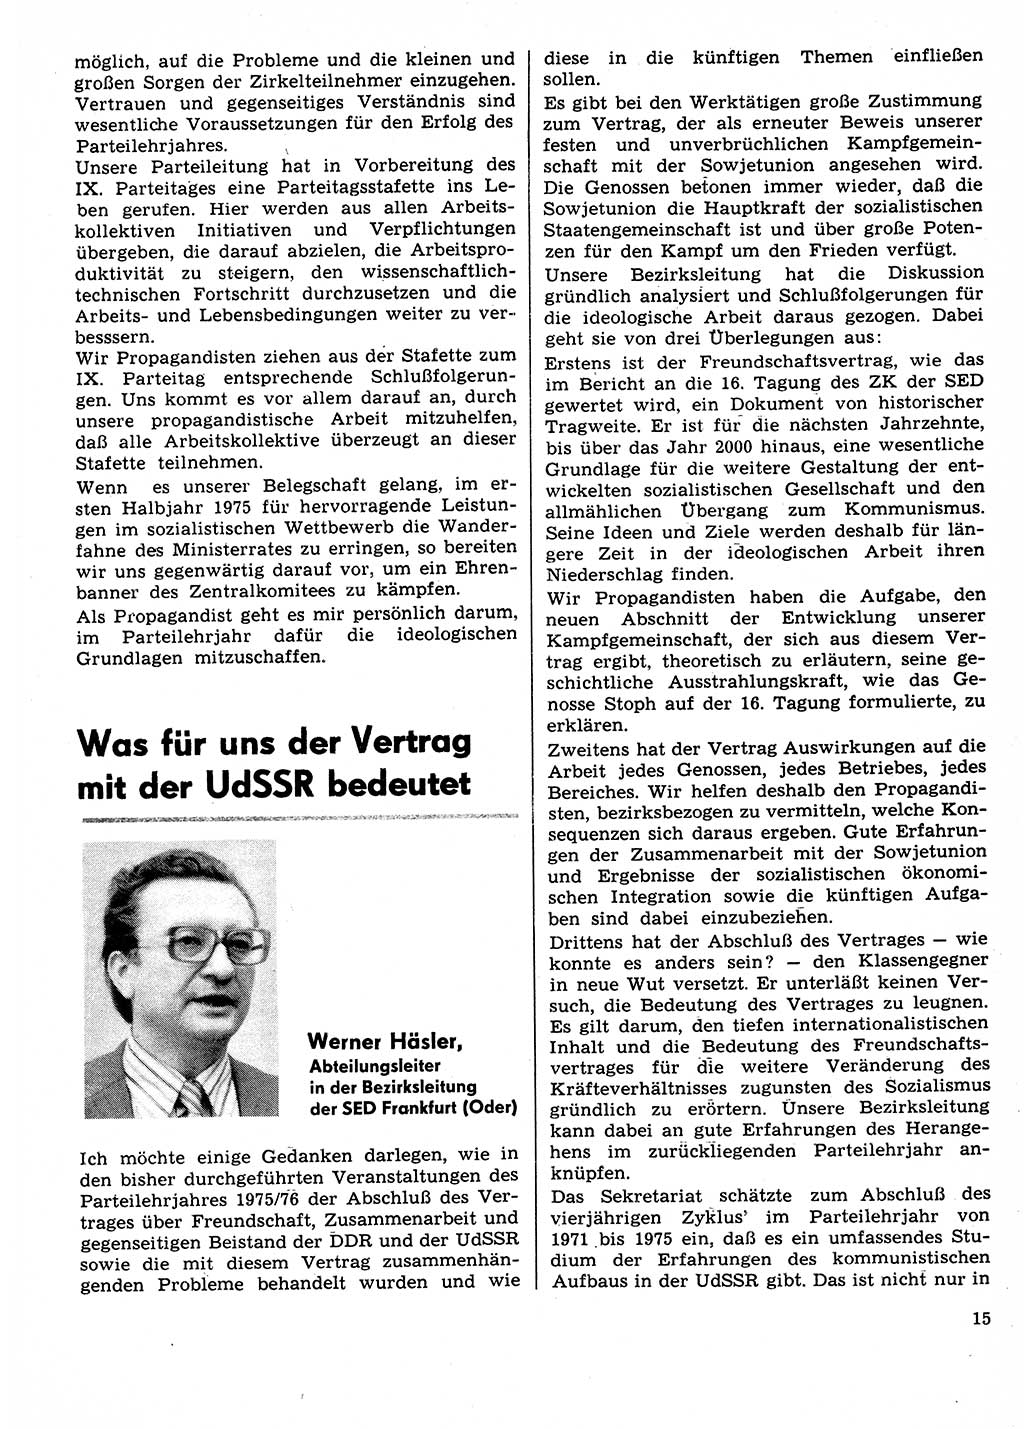 Neuer Weg (NW), Organ des Zentralkomitees (ZK) der SED (Sozialistische Einheitspartei Deutschlands) für Fragen des Parteilebens, 31. Jahrgang [Deutsche Demokratische Republik (DDR)] 1976, Seite 15 (NW ZK SED DDR 1976, S. 15)